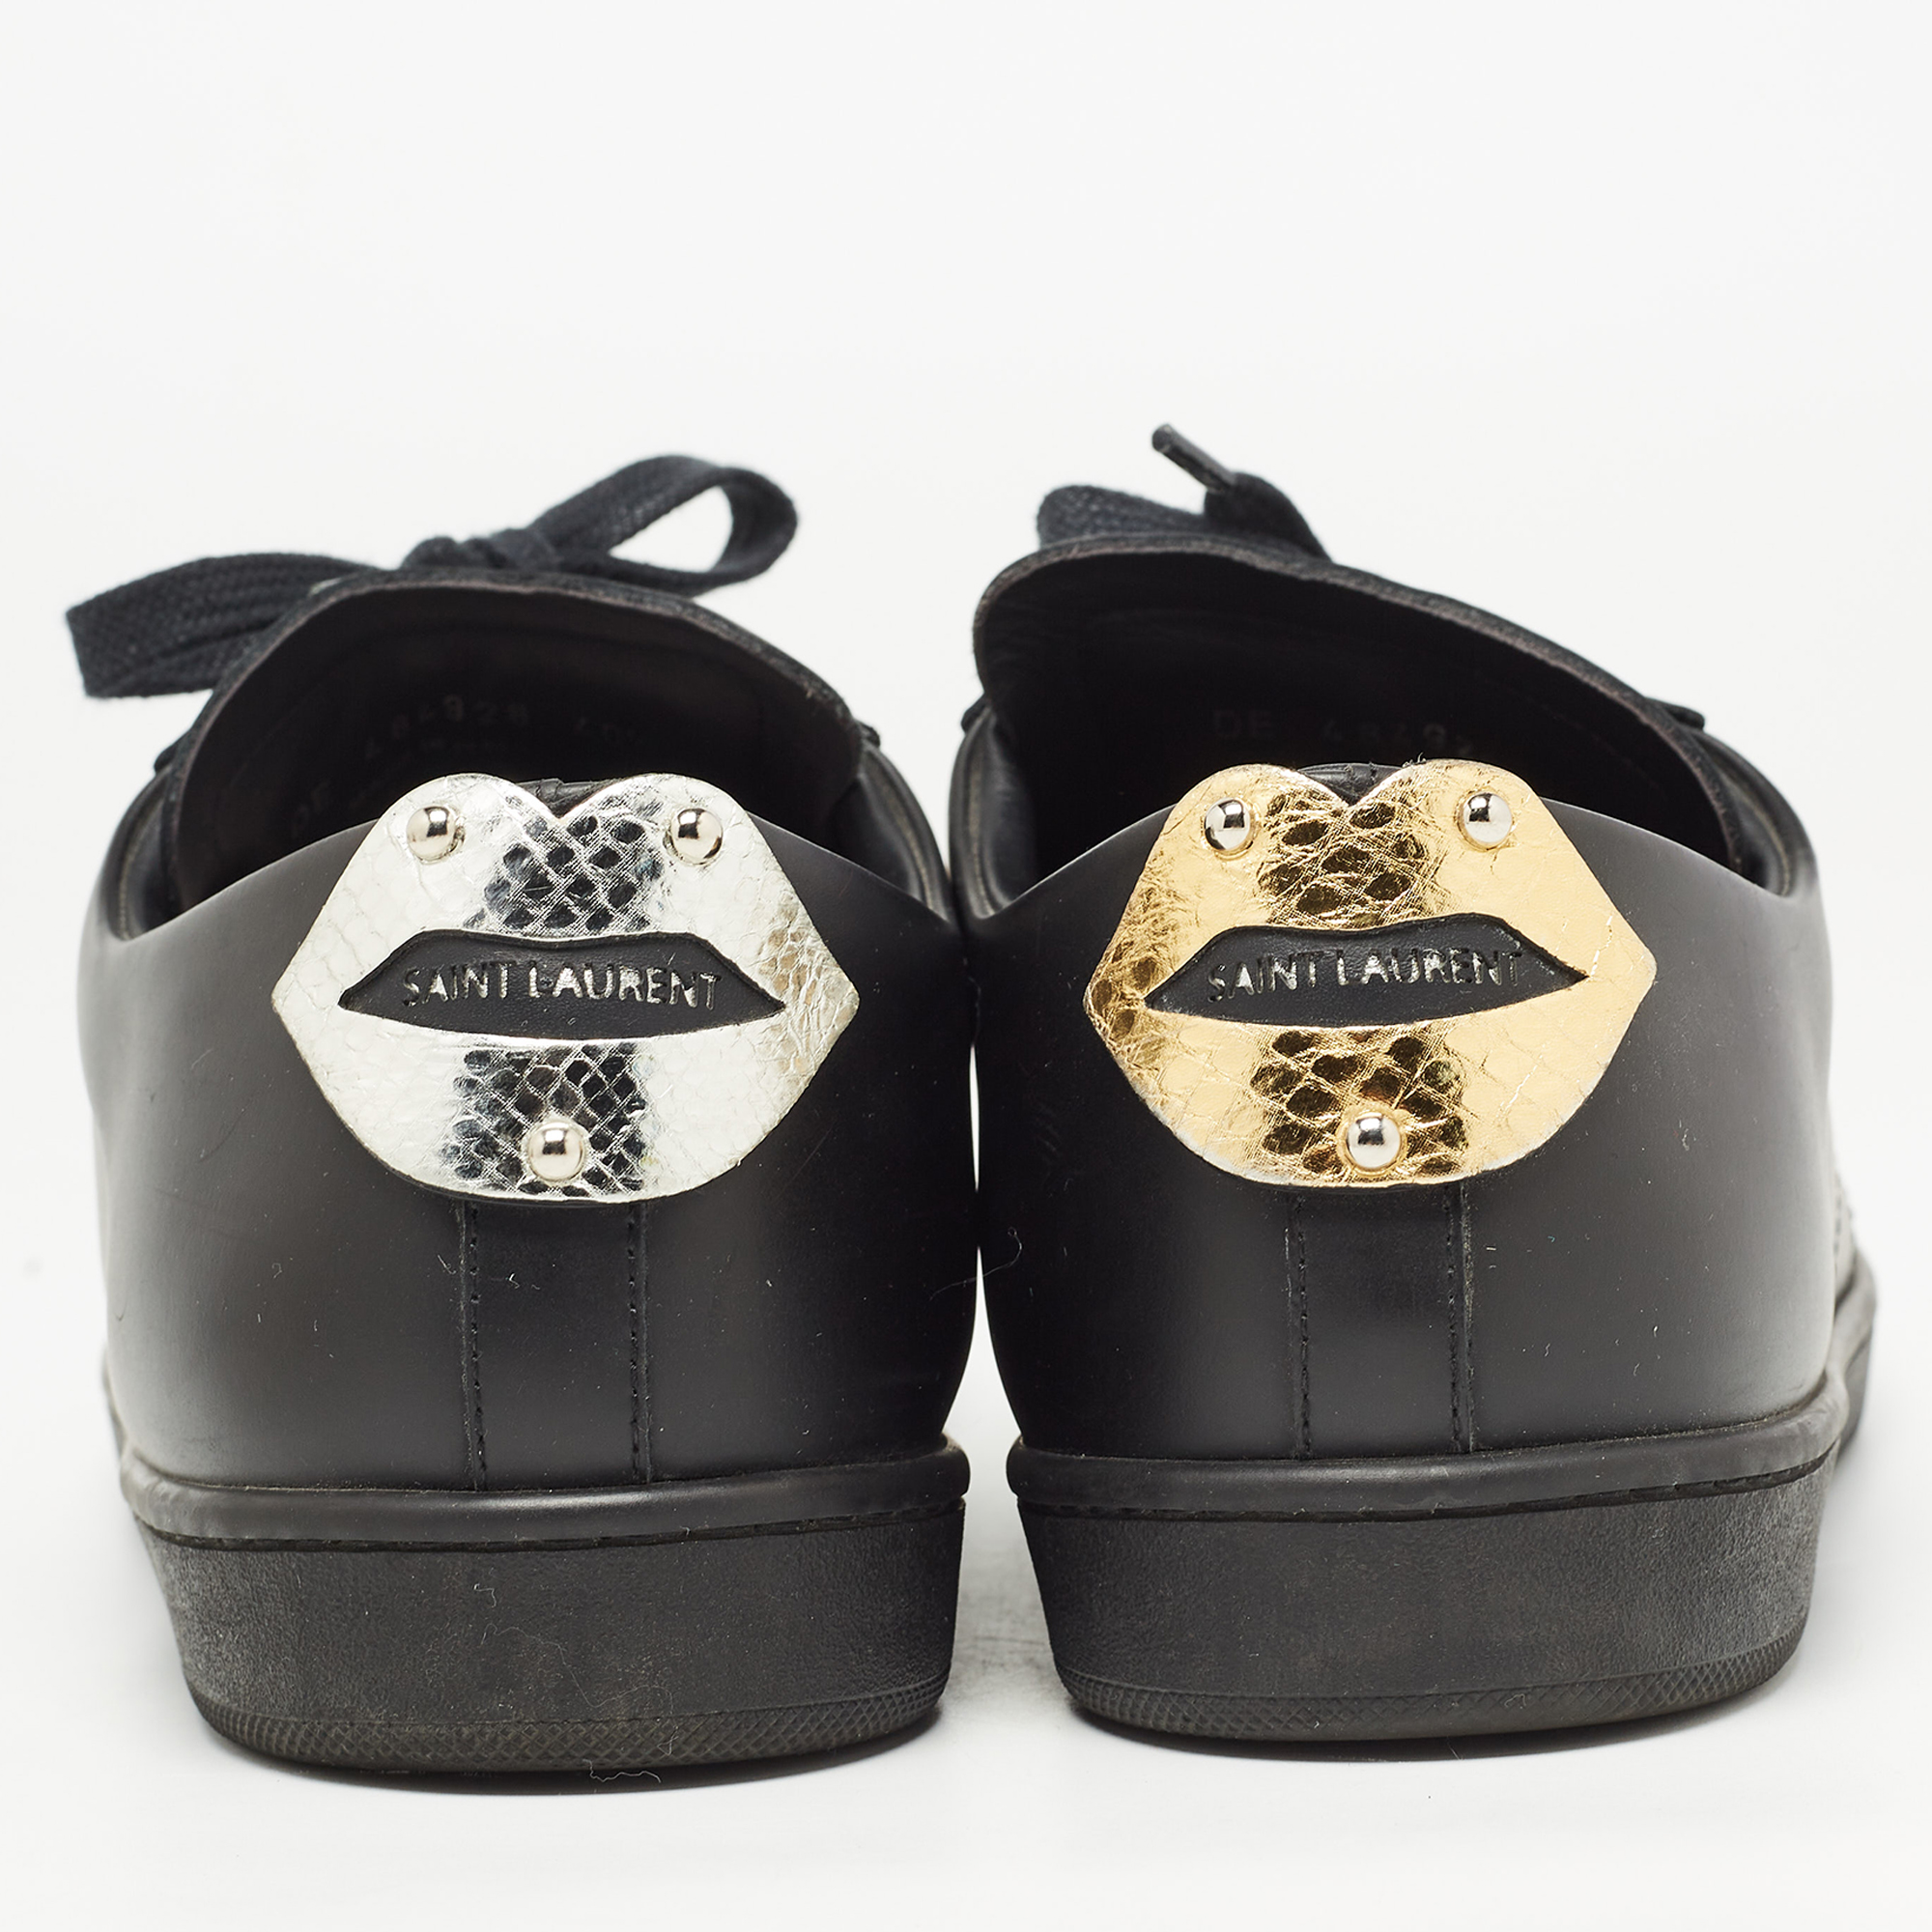 Saint Laurent Paris Black Leather Court Classic Lips Low Top Sneakers Size 40.5